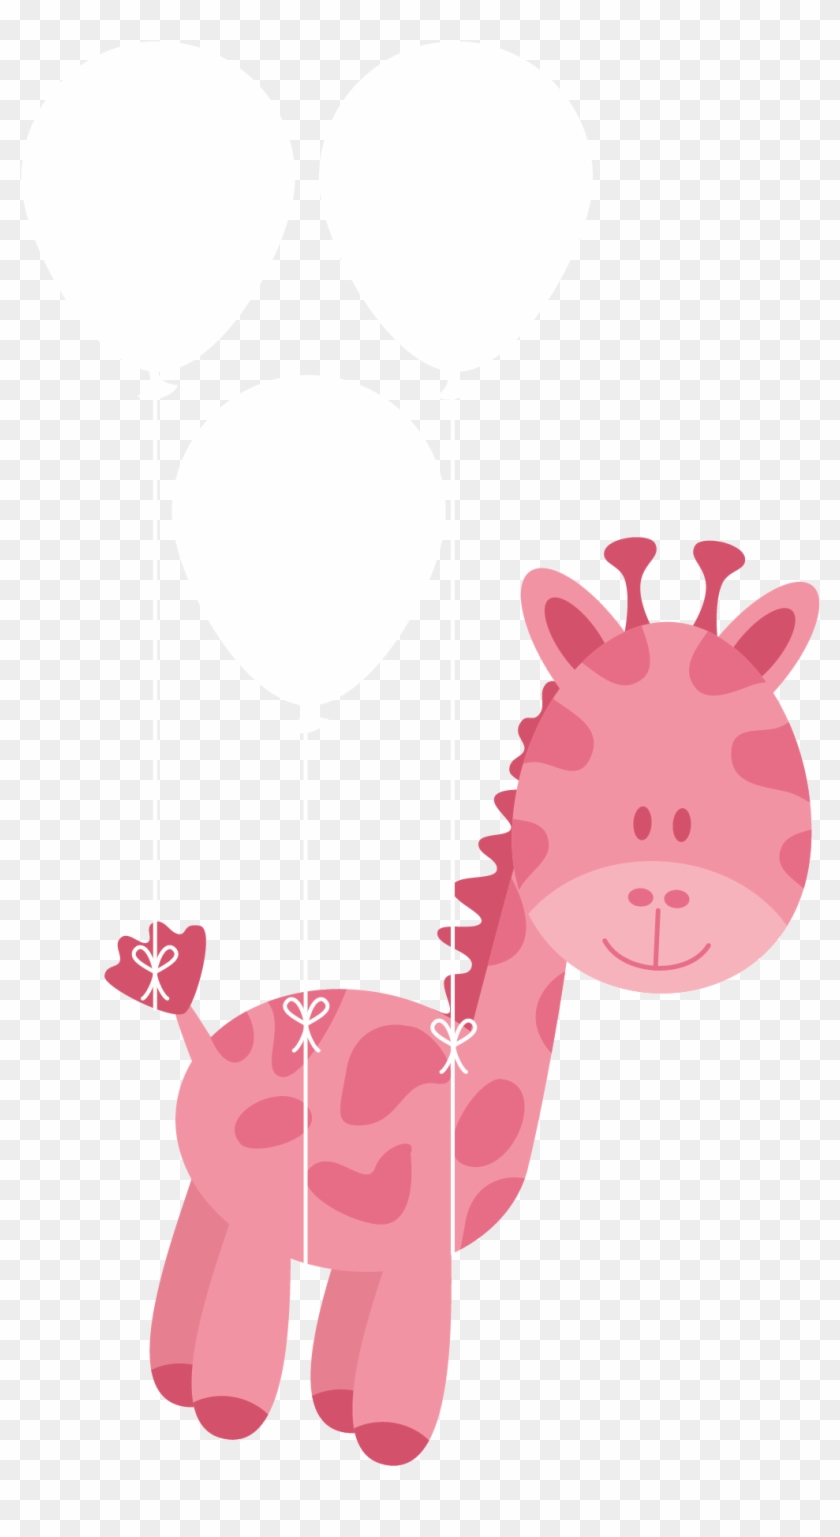 Northern Giraffe Diaper Infant Euclidean Vector Baby - Giraffe Baby Pink Png #362920